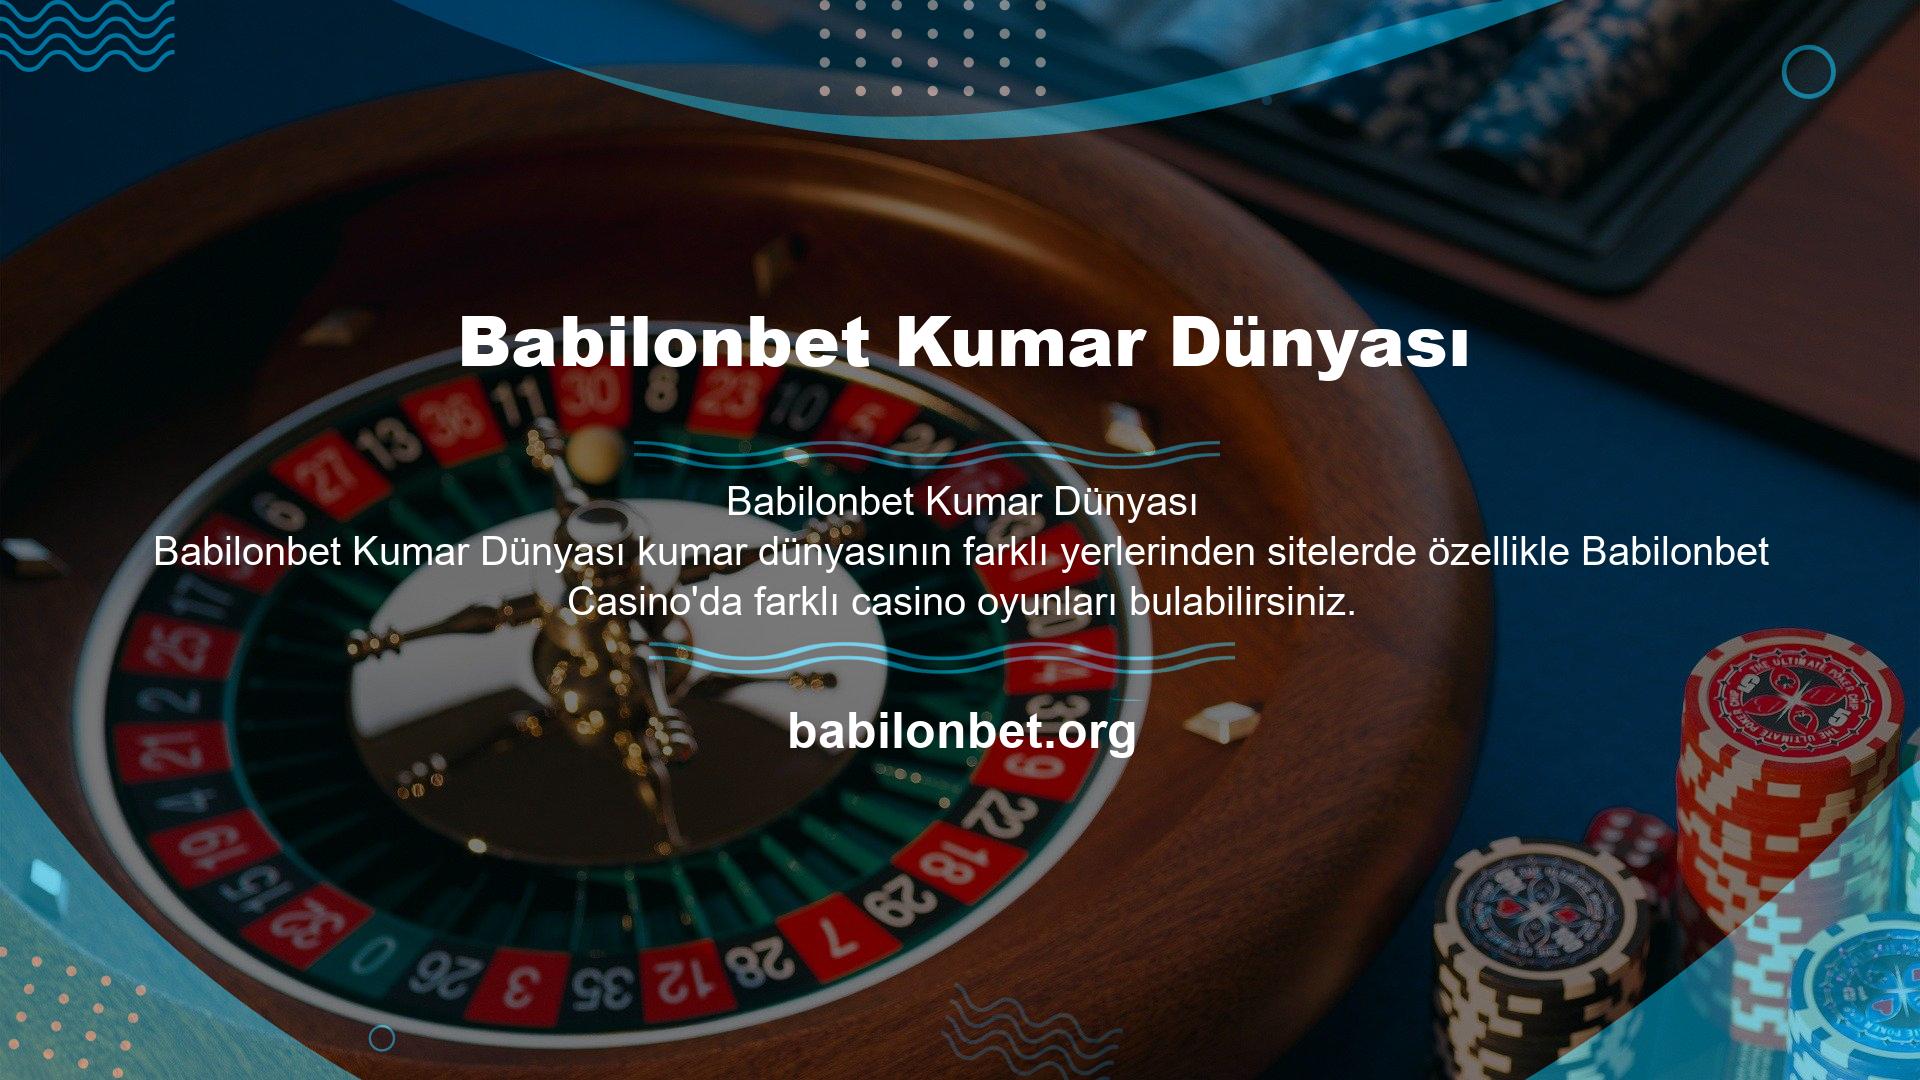 Rulet, Bakara, Casino, Sic Bo, Dragon Tiger, Canlı Casino, Poker ve Blackjack en popüler oyunlardan bazılarıdır